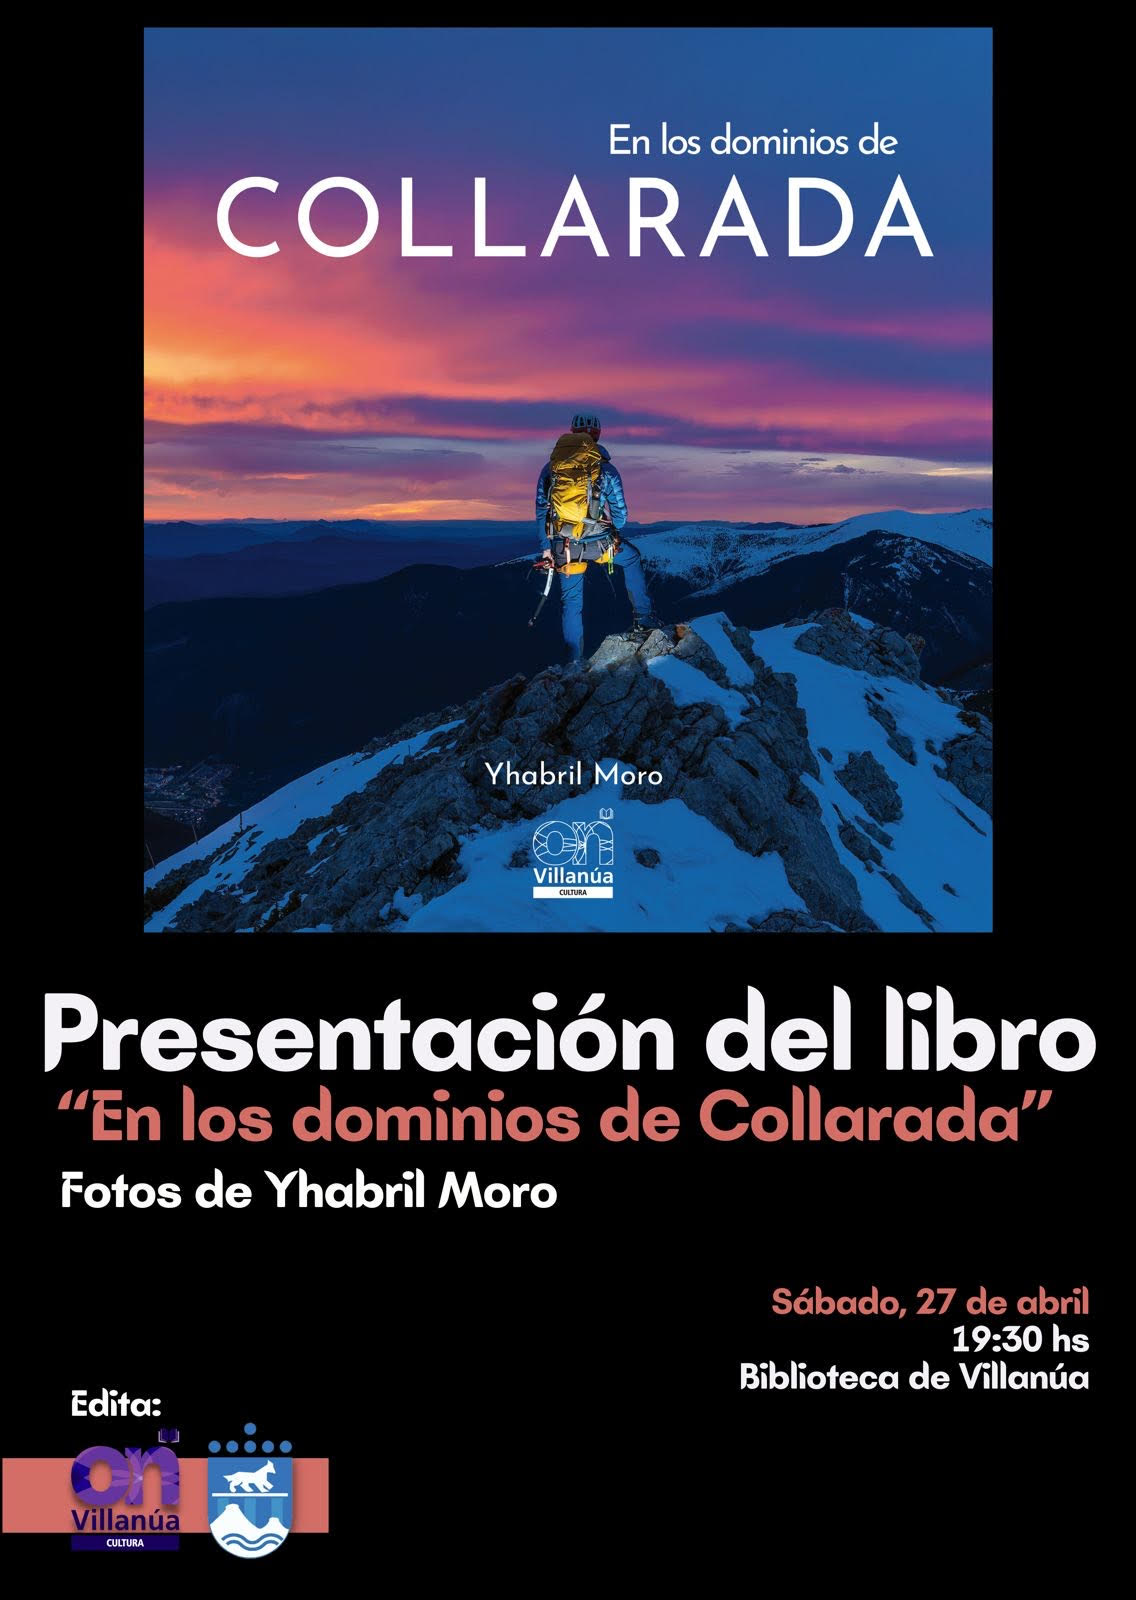 el sábado 27 a las 19:30h se podrá descubrir el libro "En los dominios de Collarada" de Yhabril Moro, editado por el Ayuntamiento de Villanúa